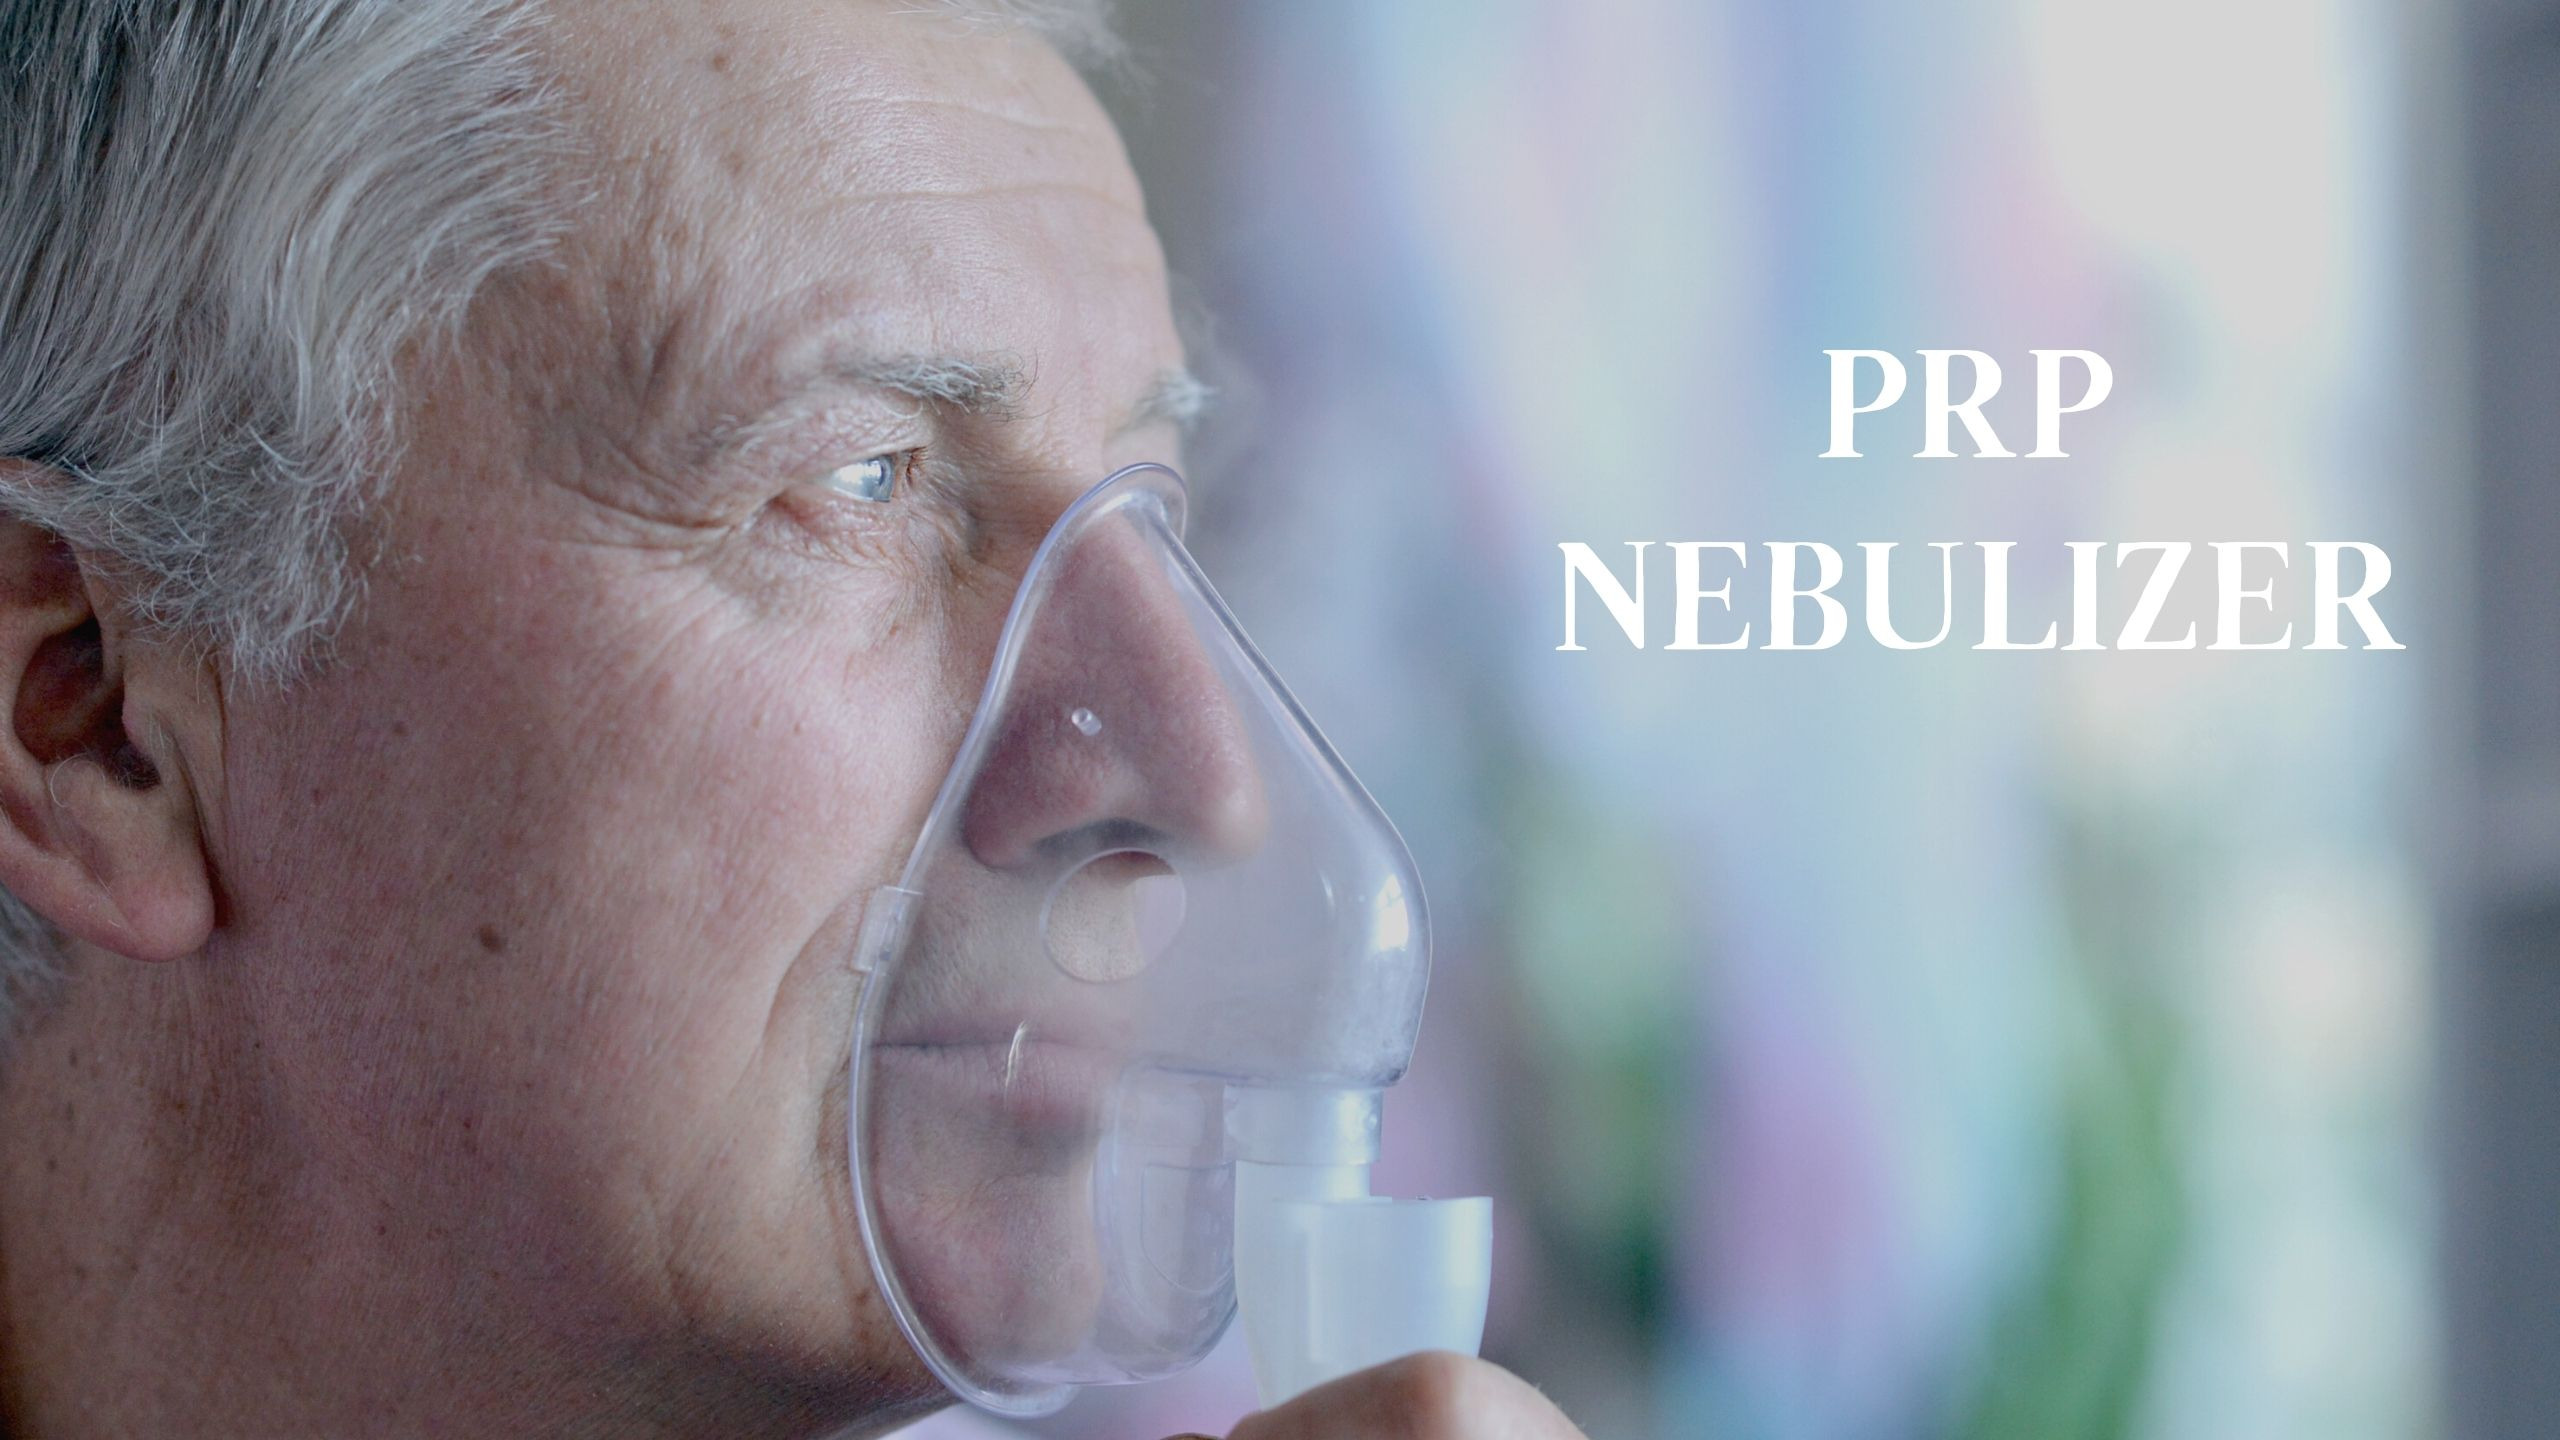 Nébuliseur PRP pour les maladies pulmonaires - une méthode de traitement innovante